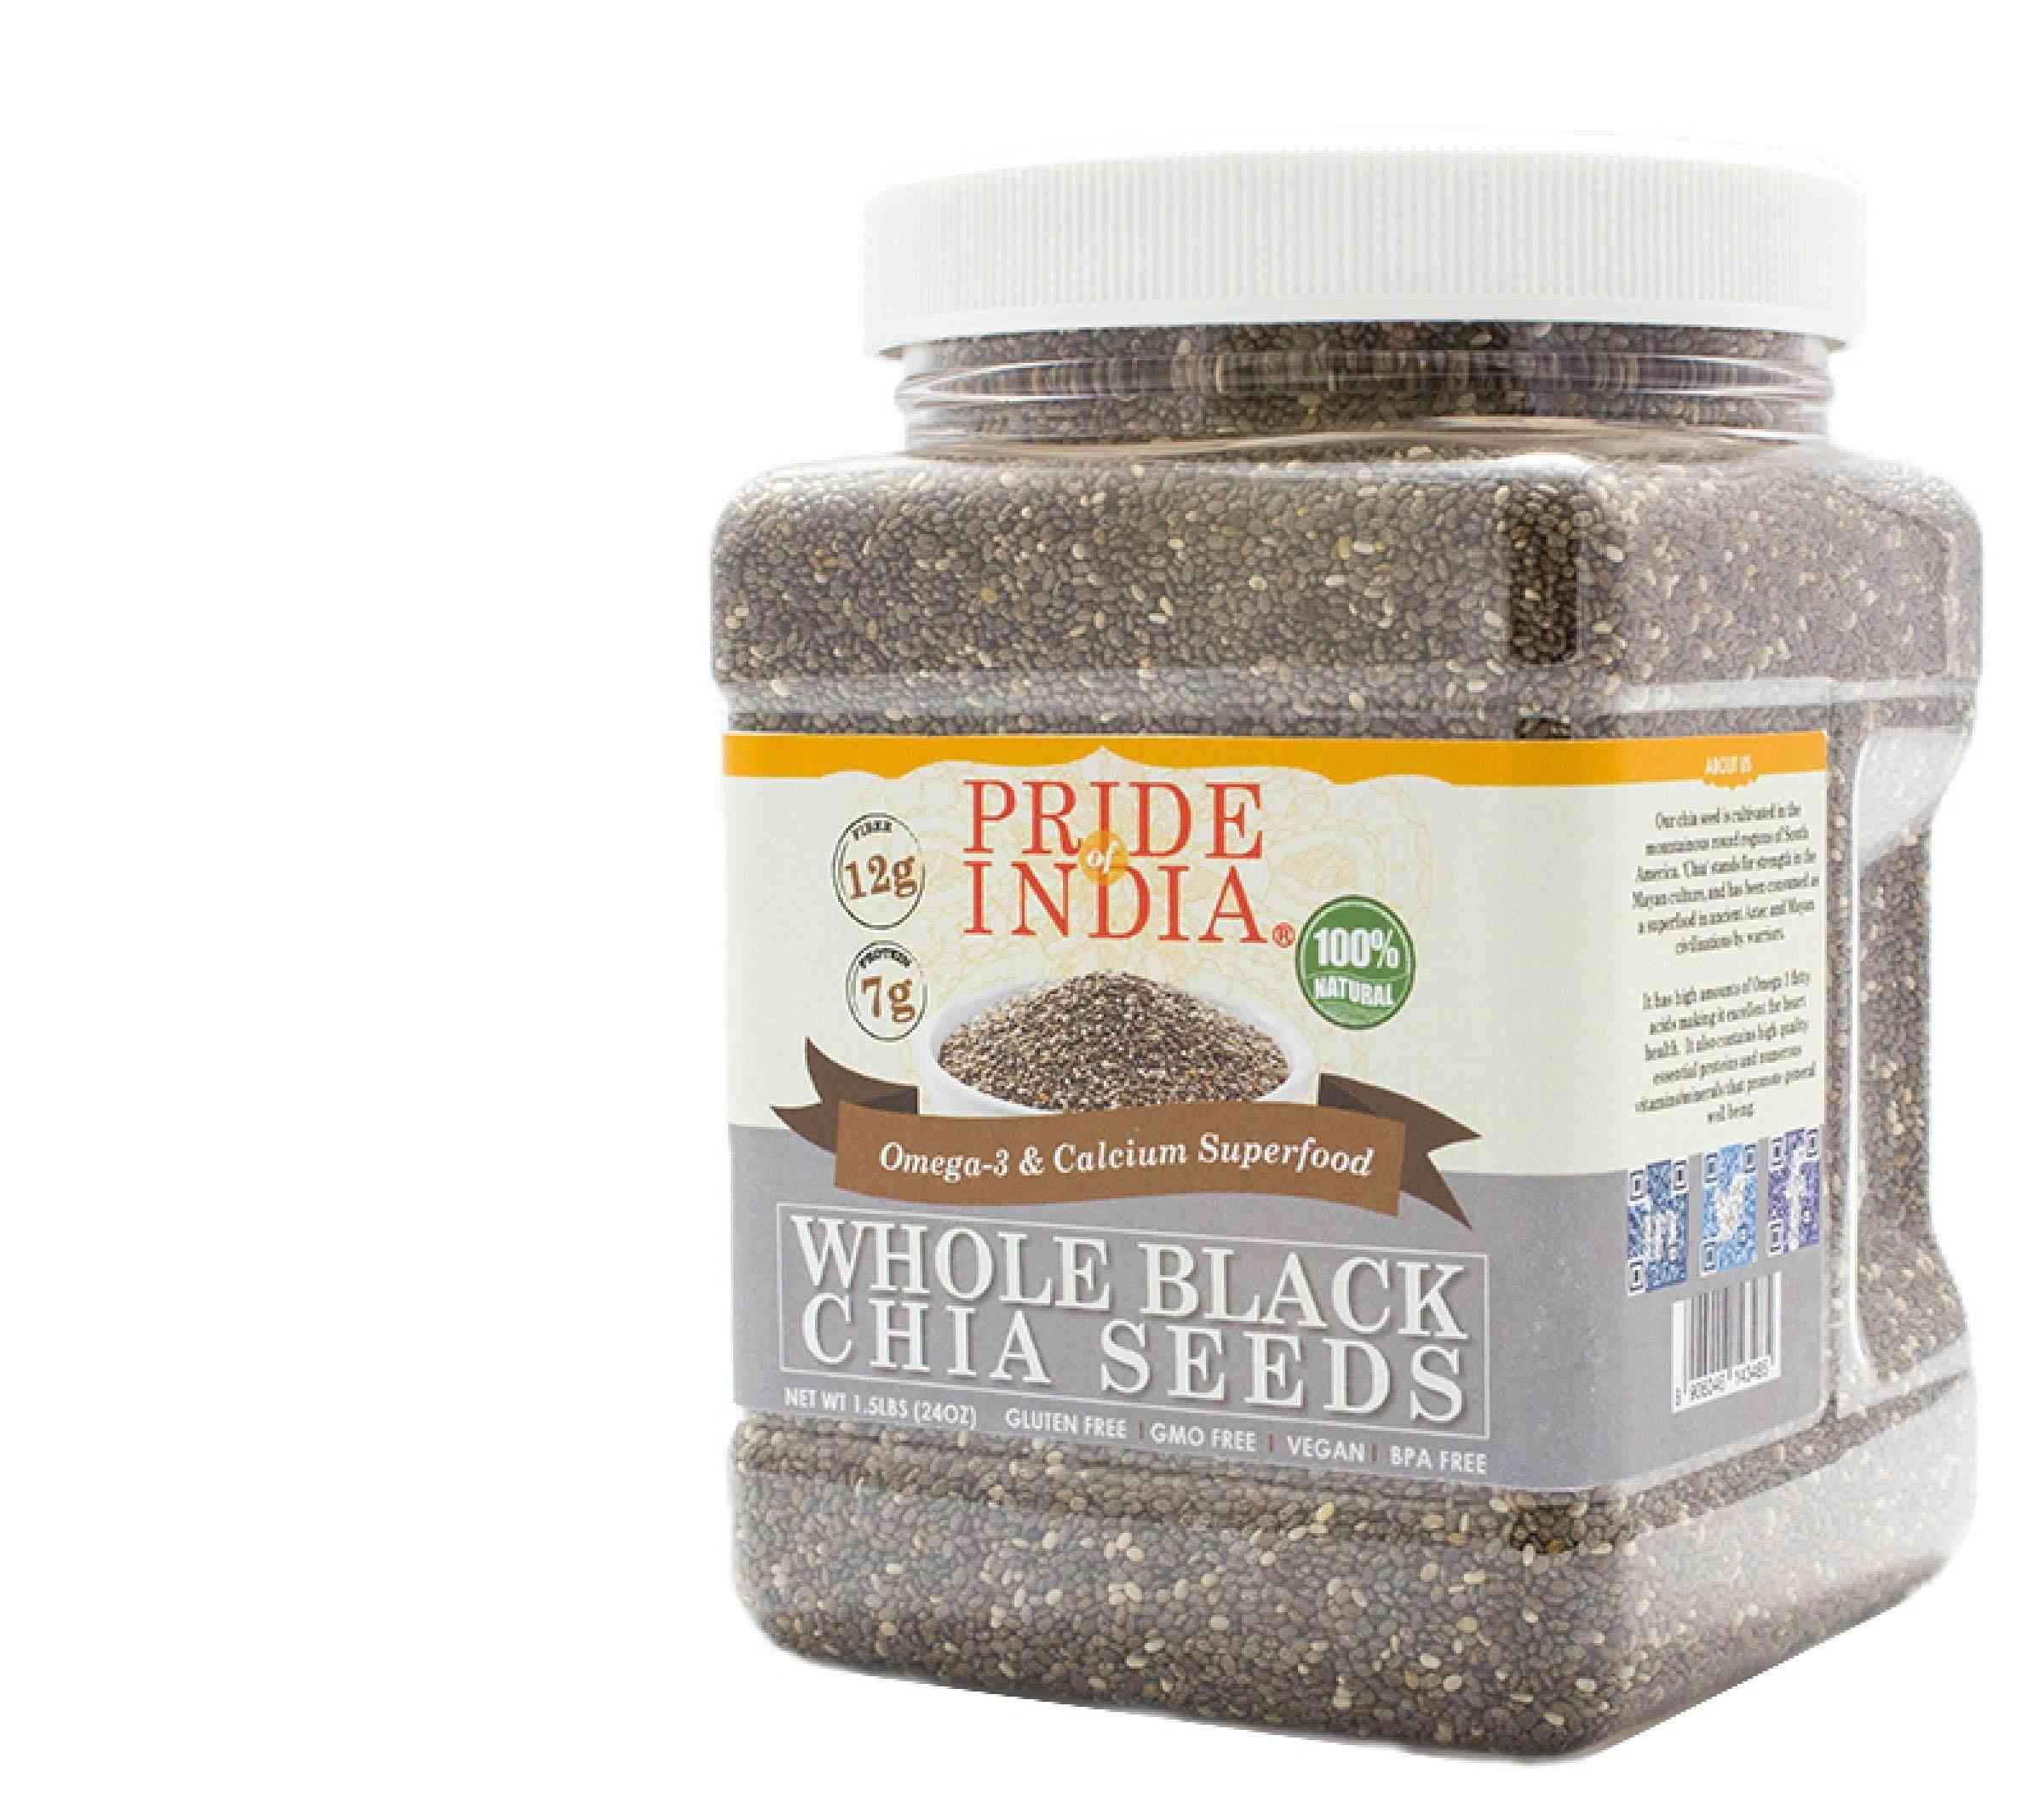 Whole Black Chia Seeds Omega-3